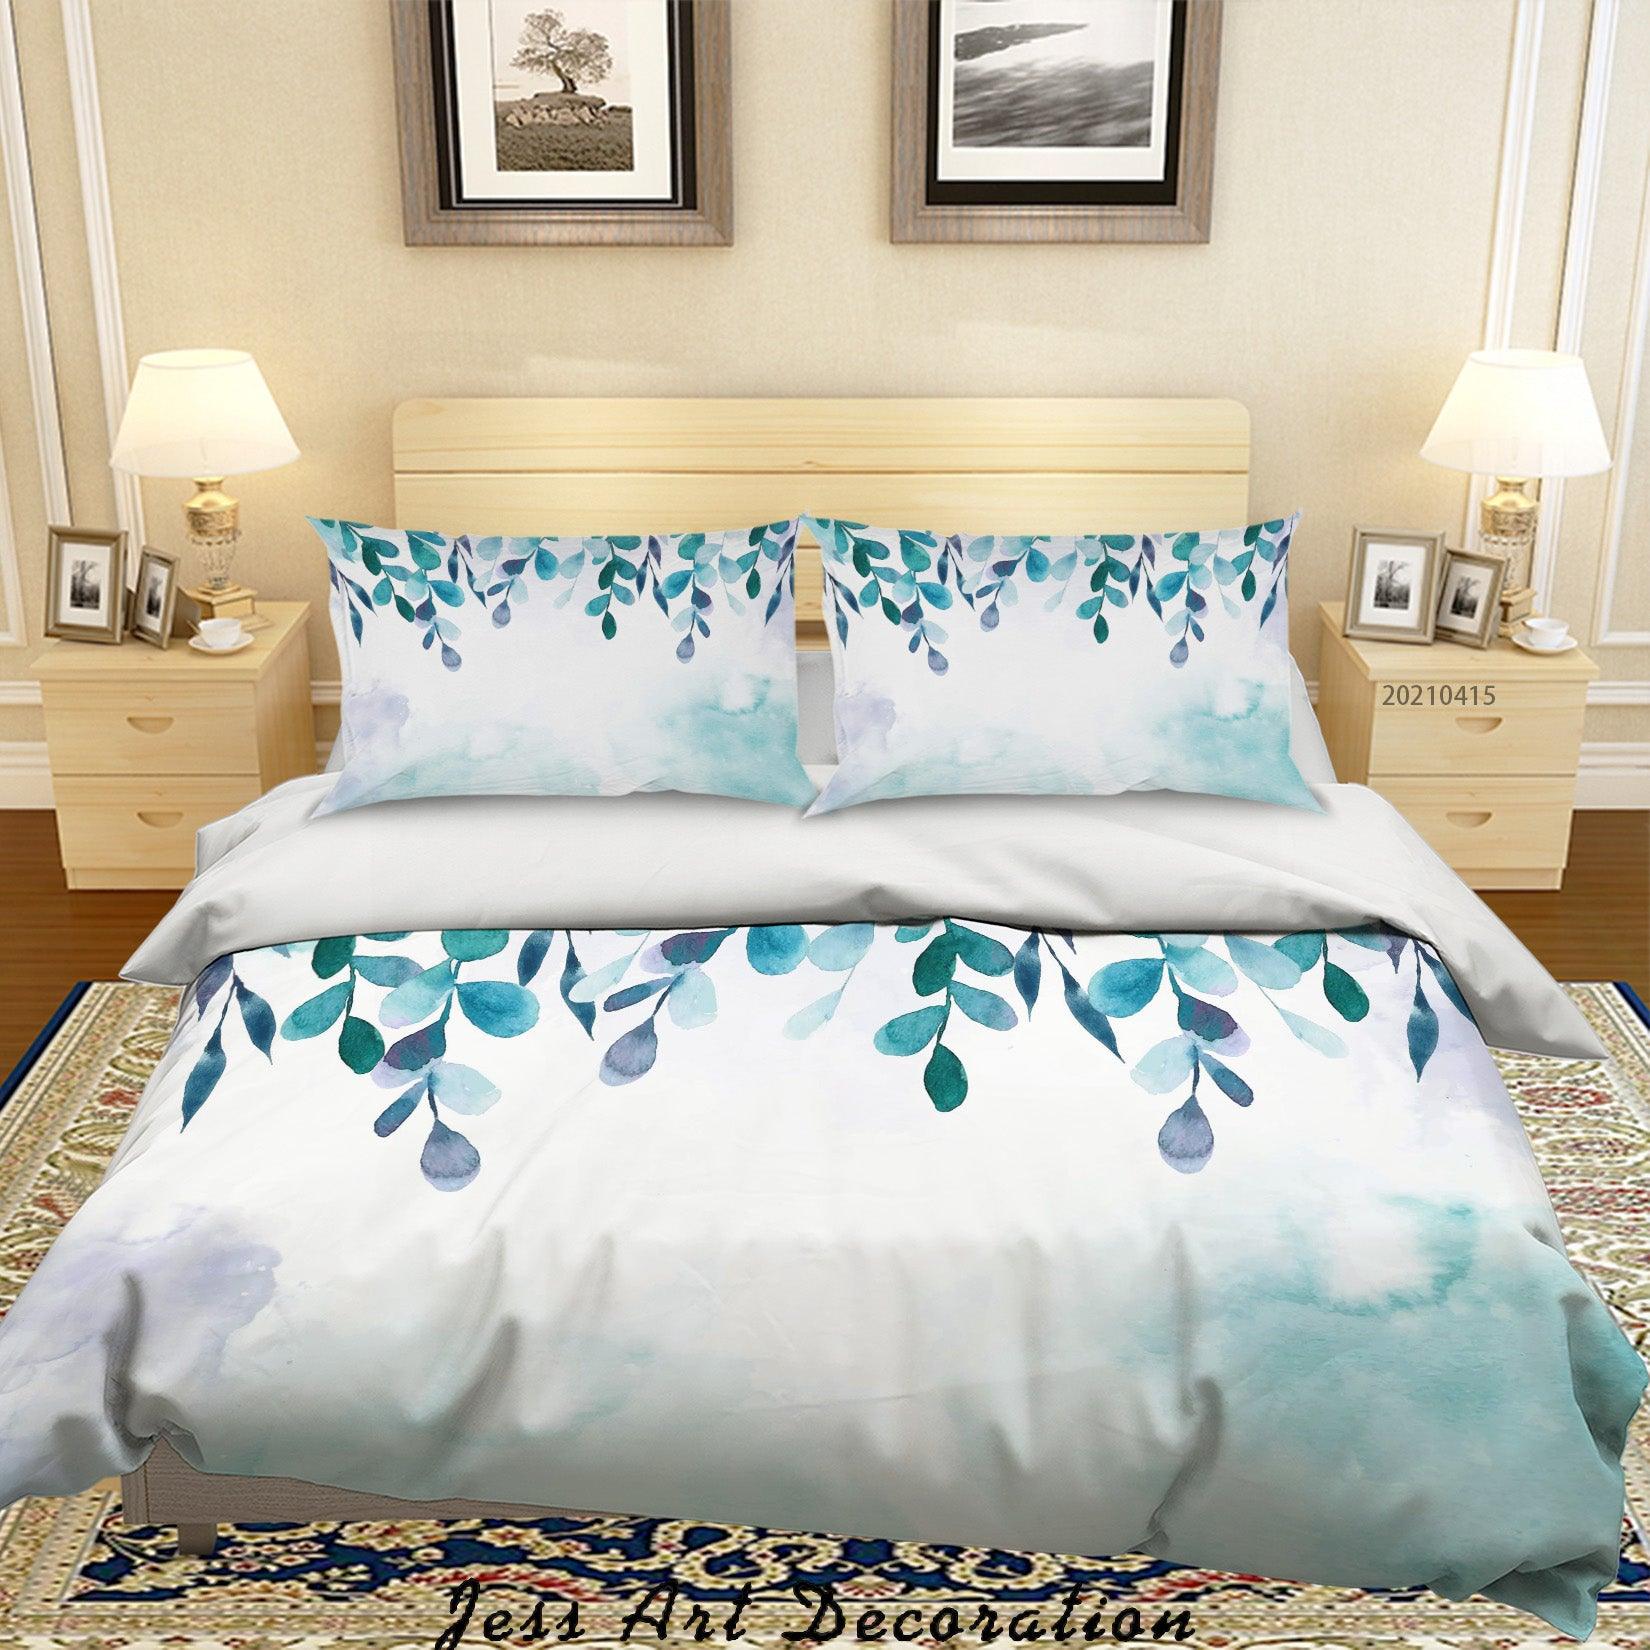 3D Watercolor Leaf Pattern Quilt Cover Set Bedding Set Duvet Cover Pillowcases 109- Jess Art Decoration